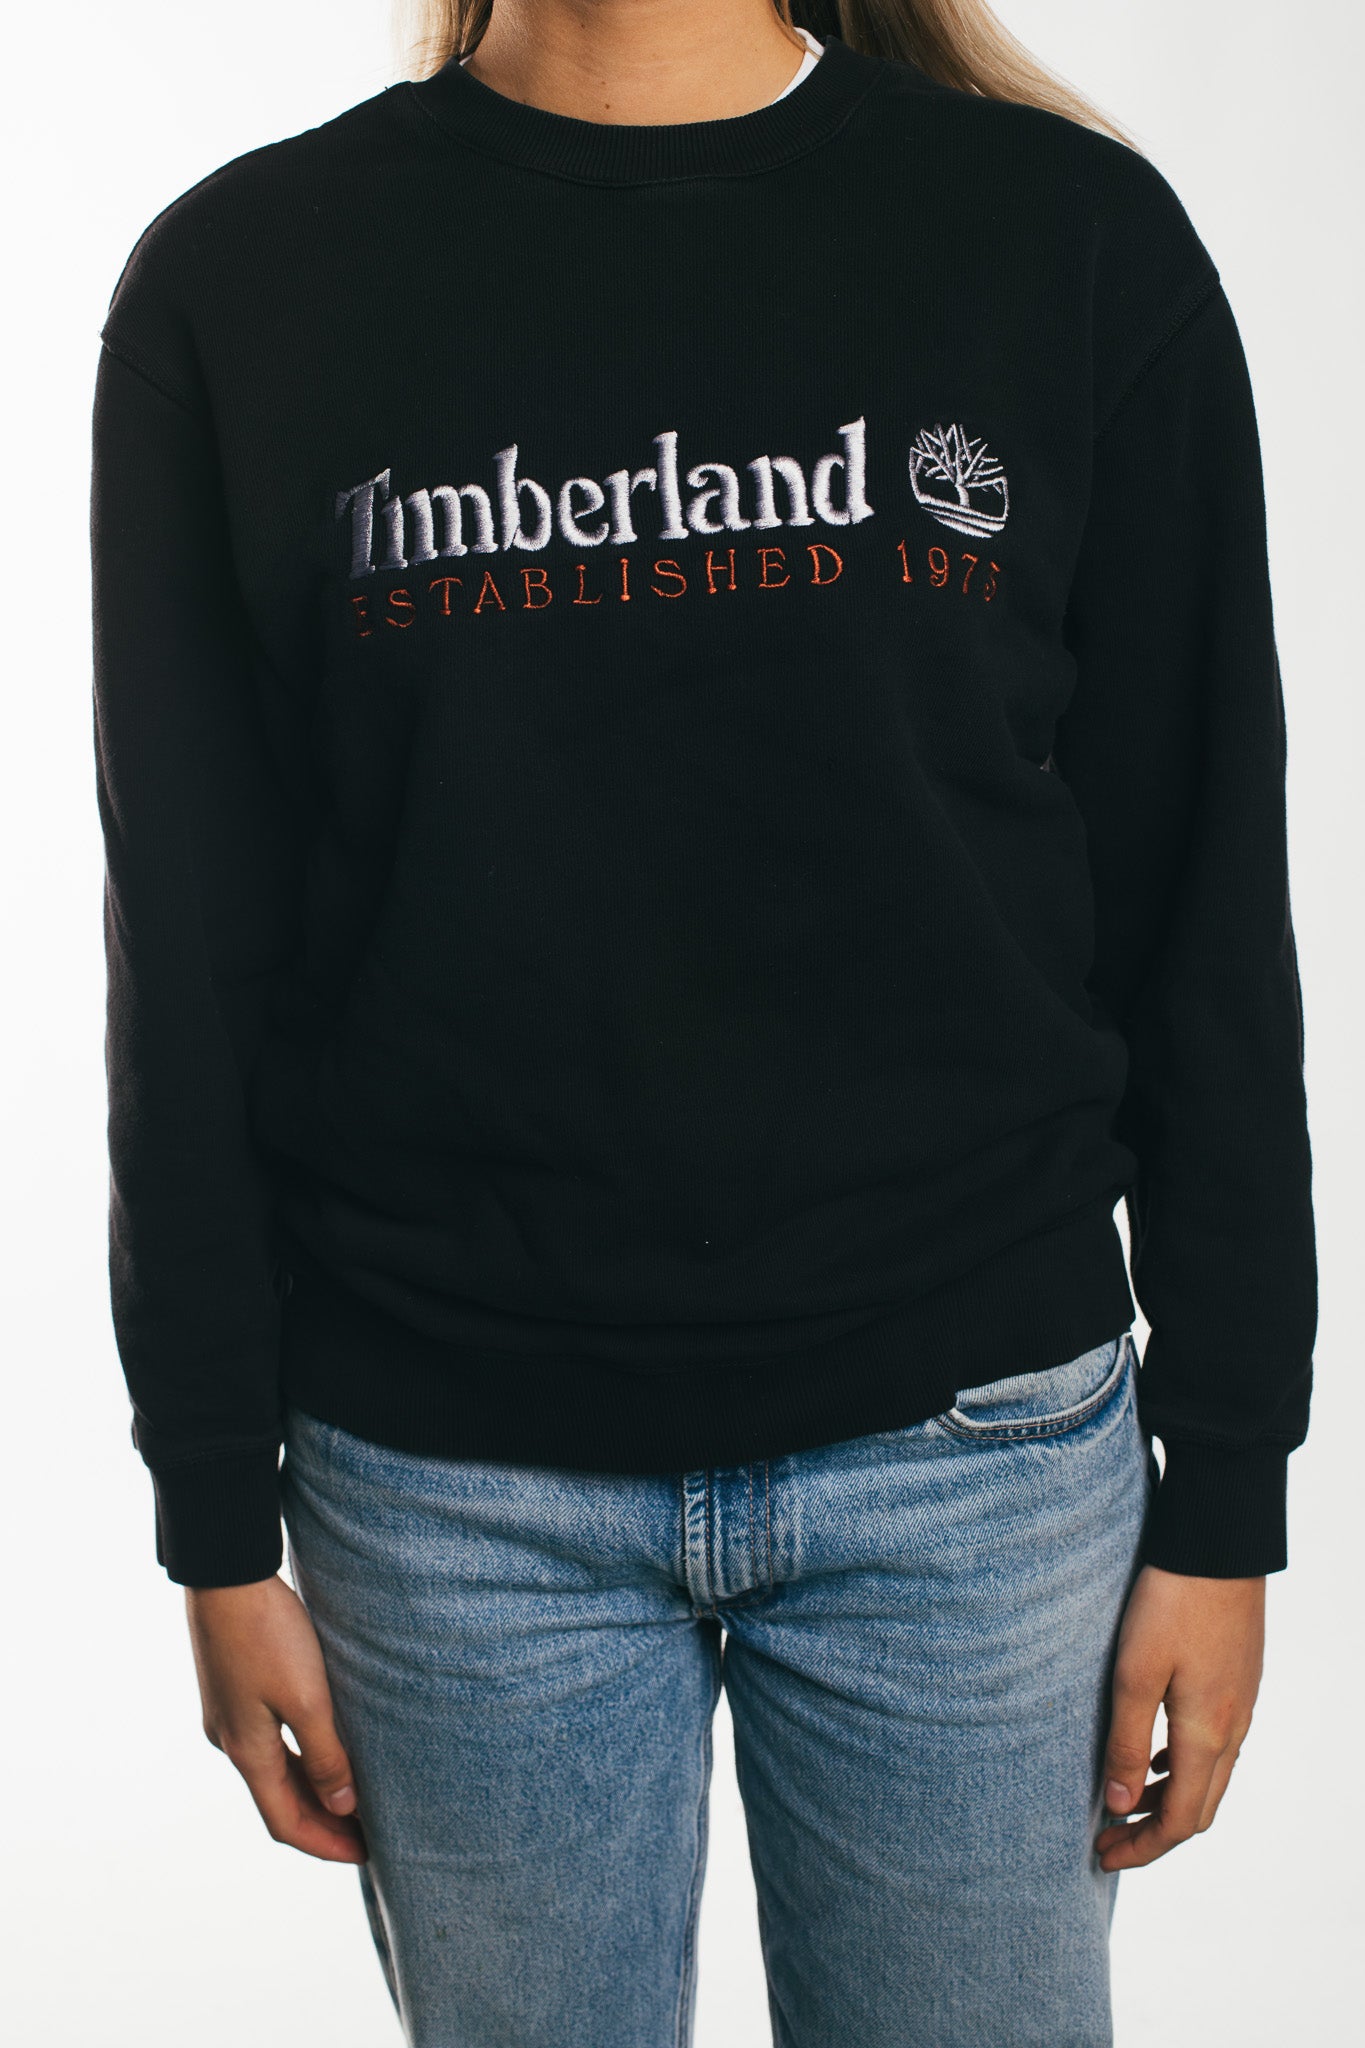 Timberland - Sweatshirt (M)